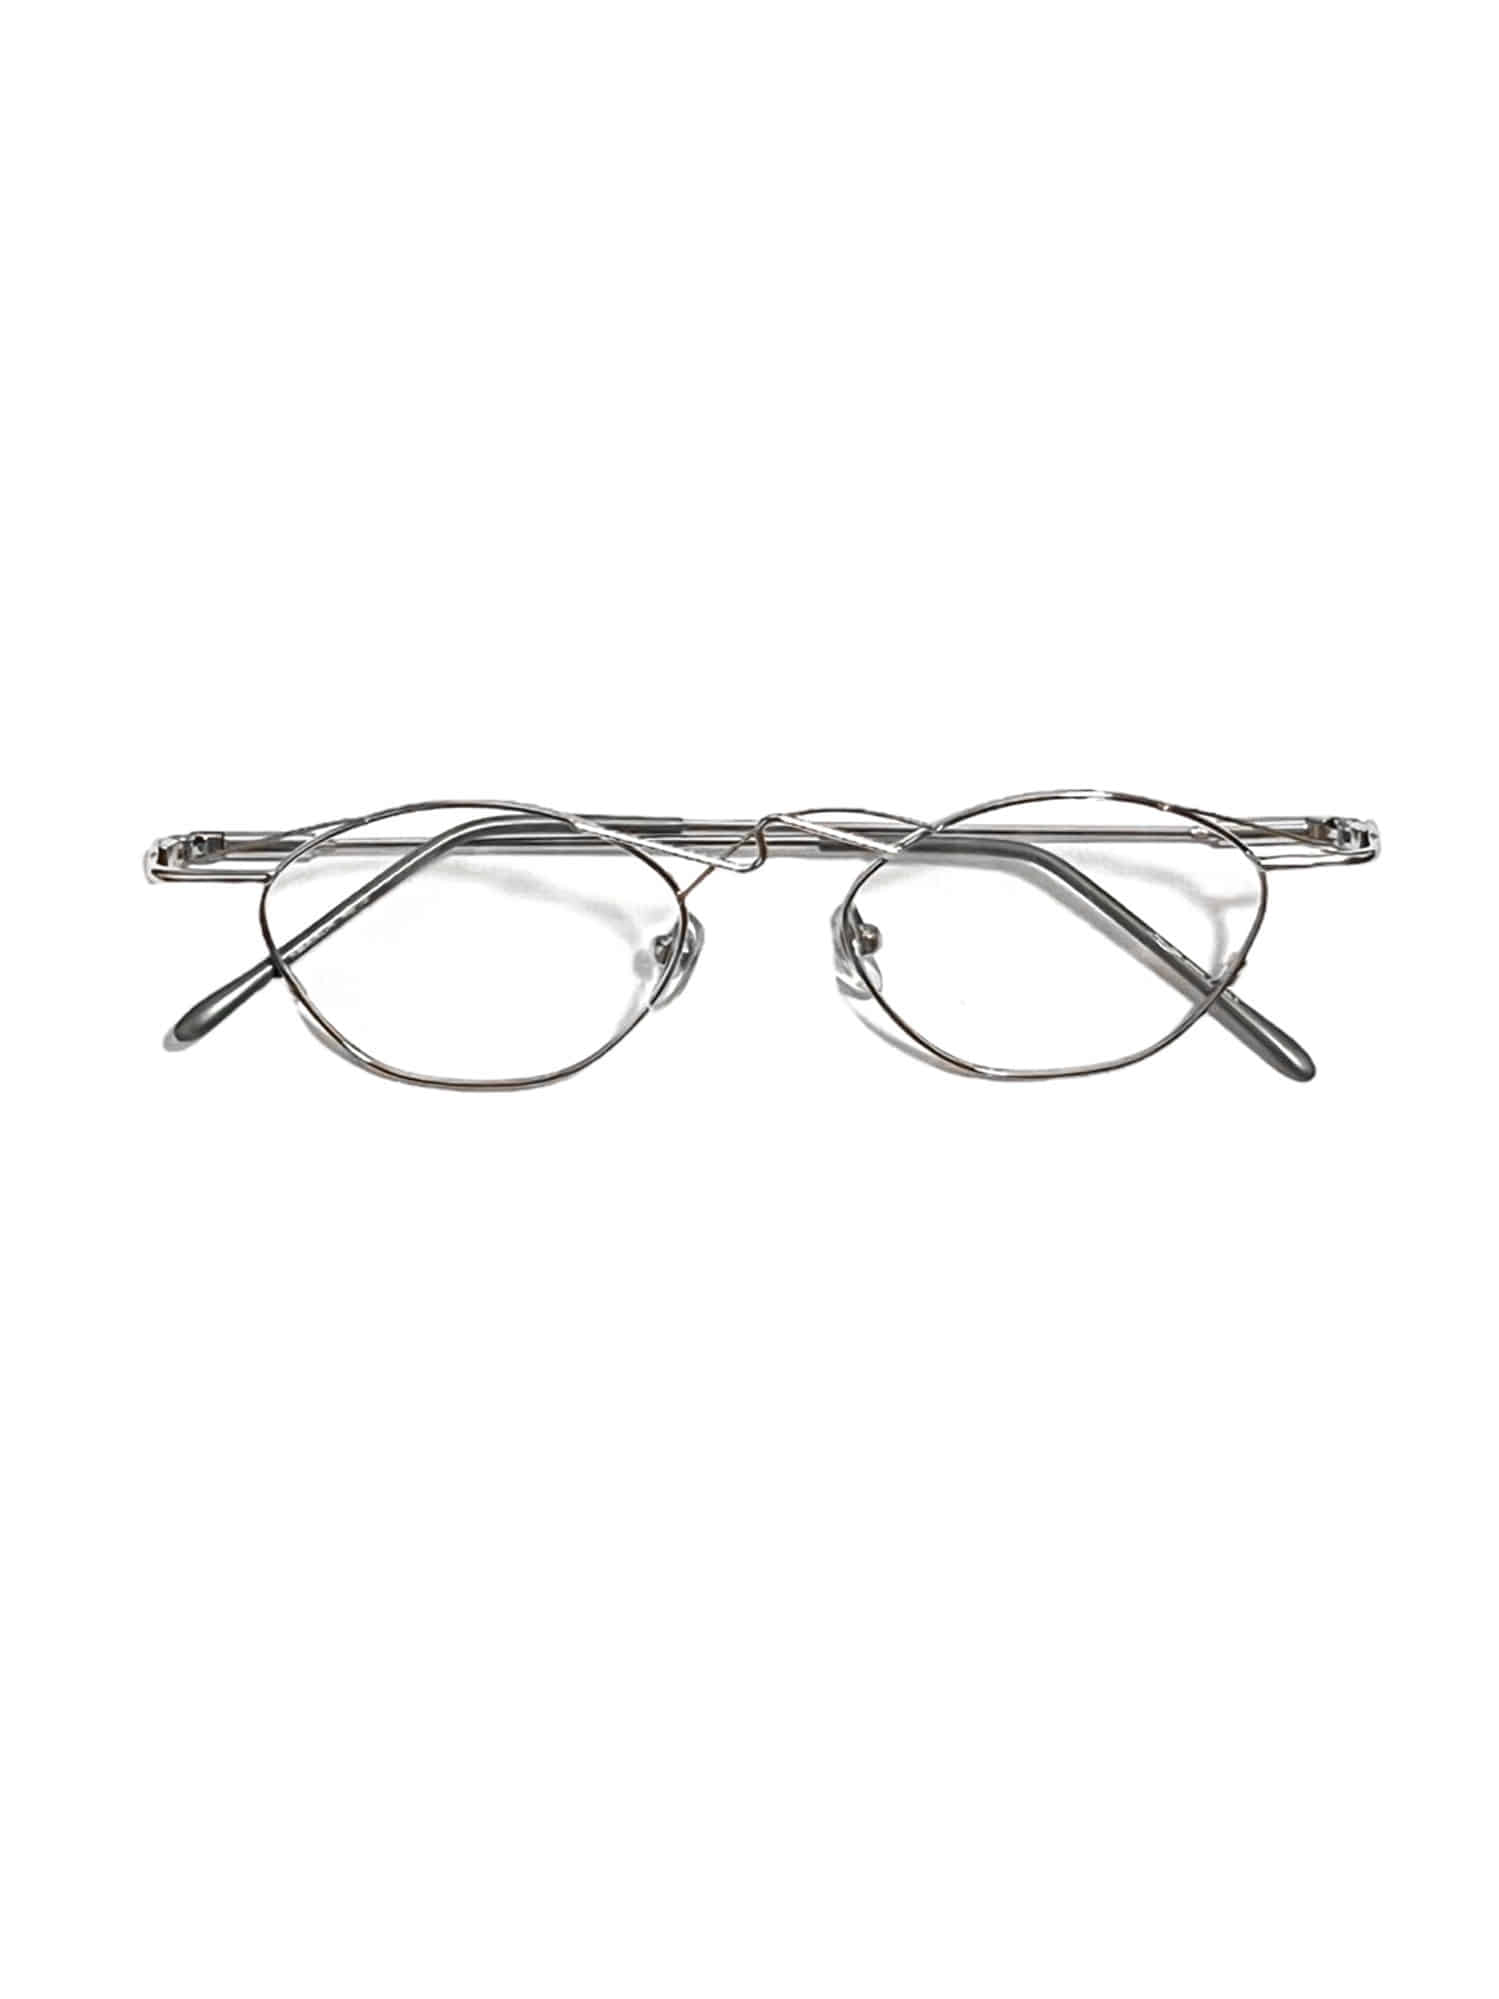 Vintage Thin wave frame glasses